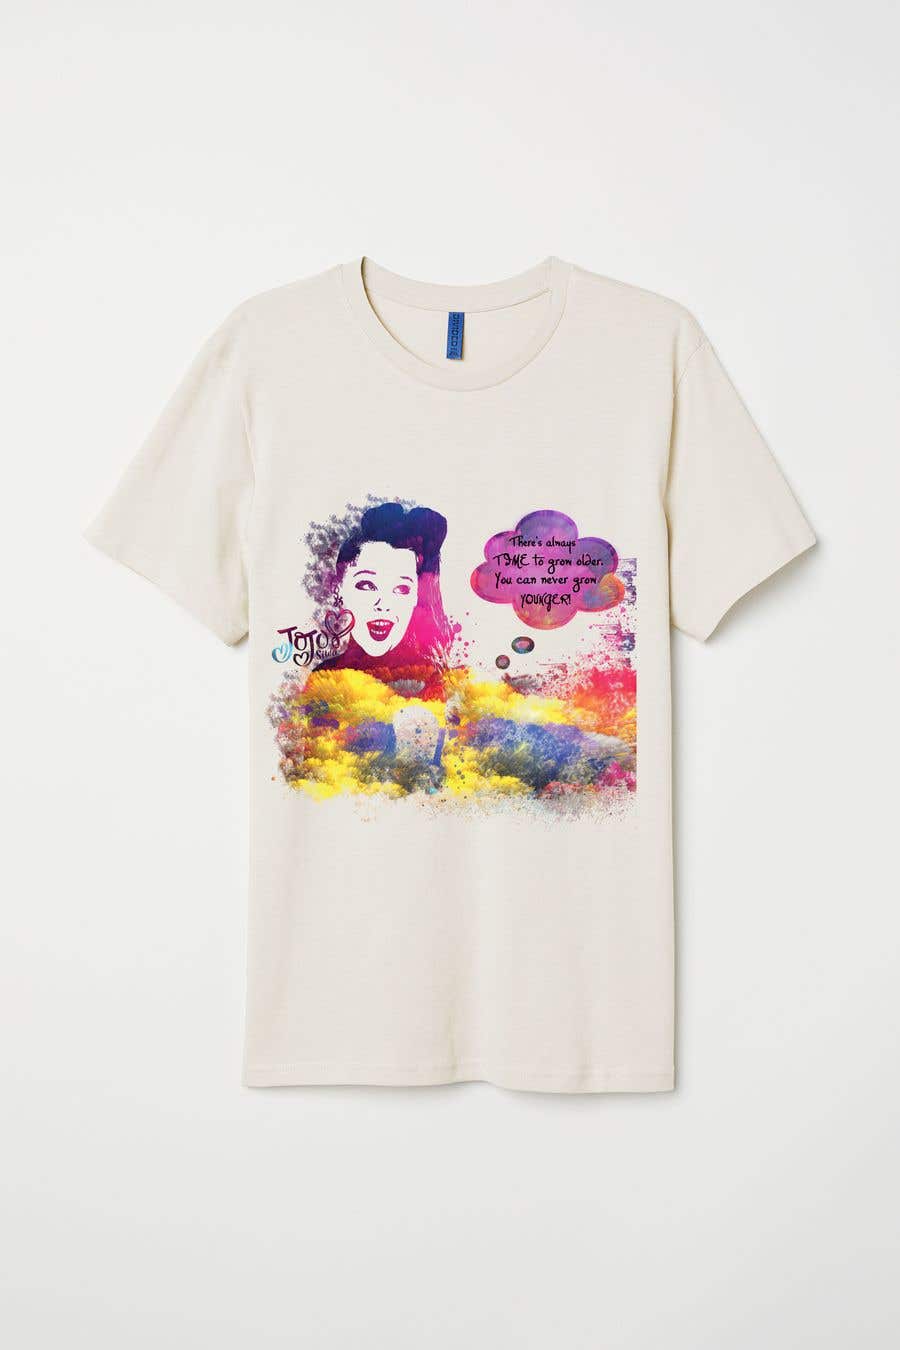 Kandidatura #31për                                                 New Tshirt Design for Jojo Siwa outlet
                                            